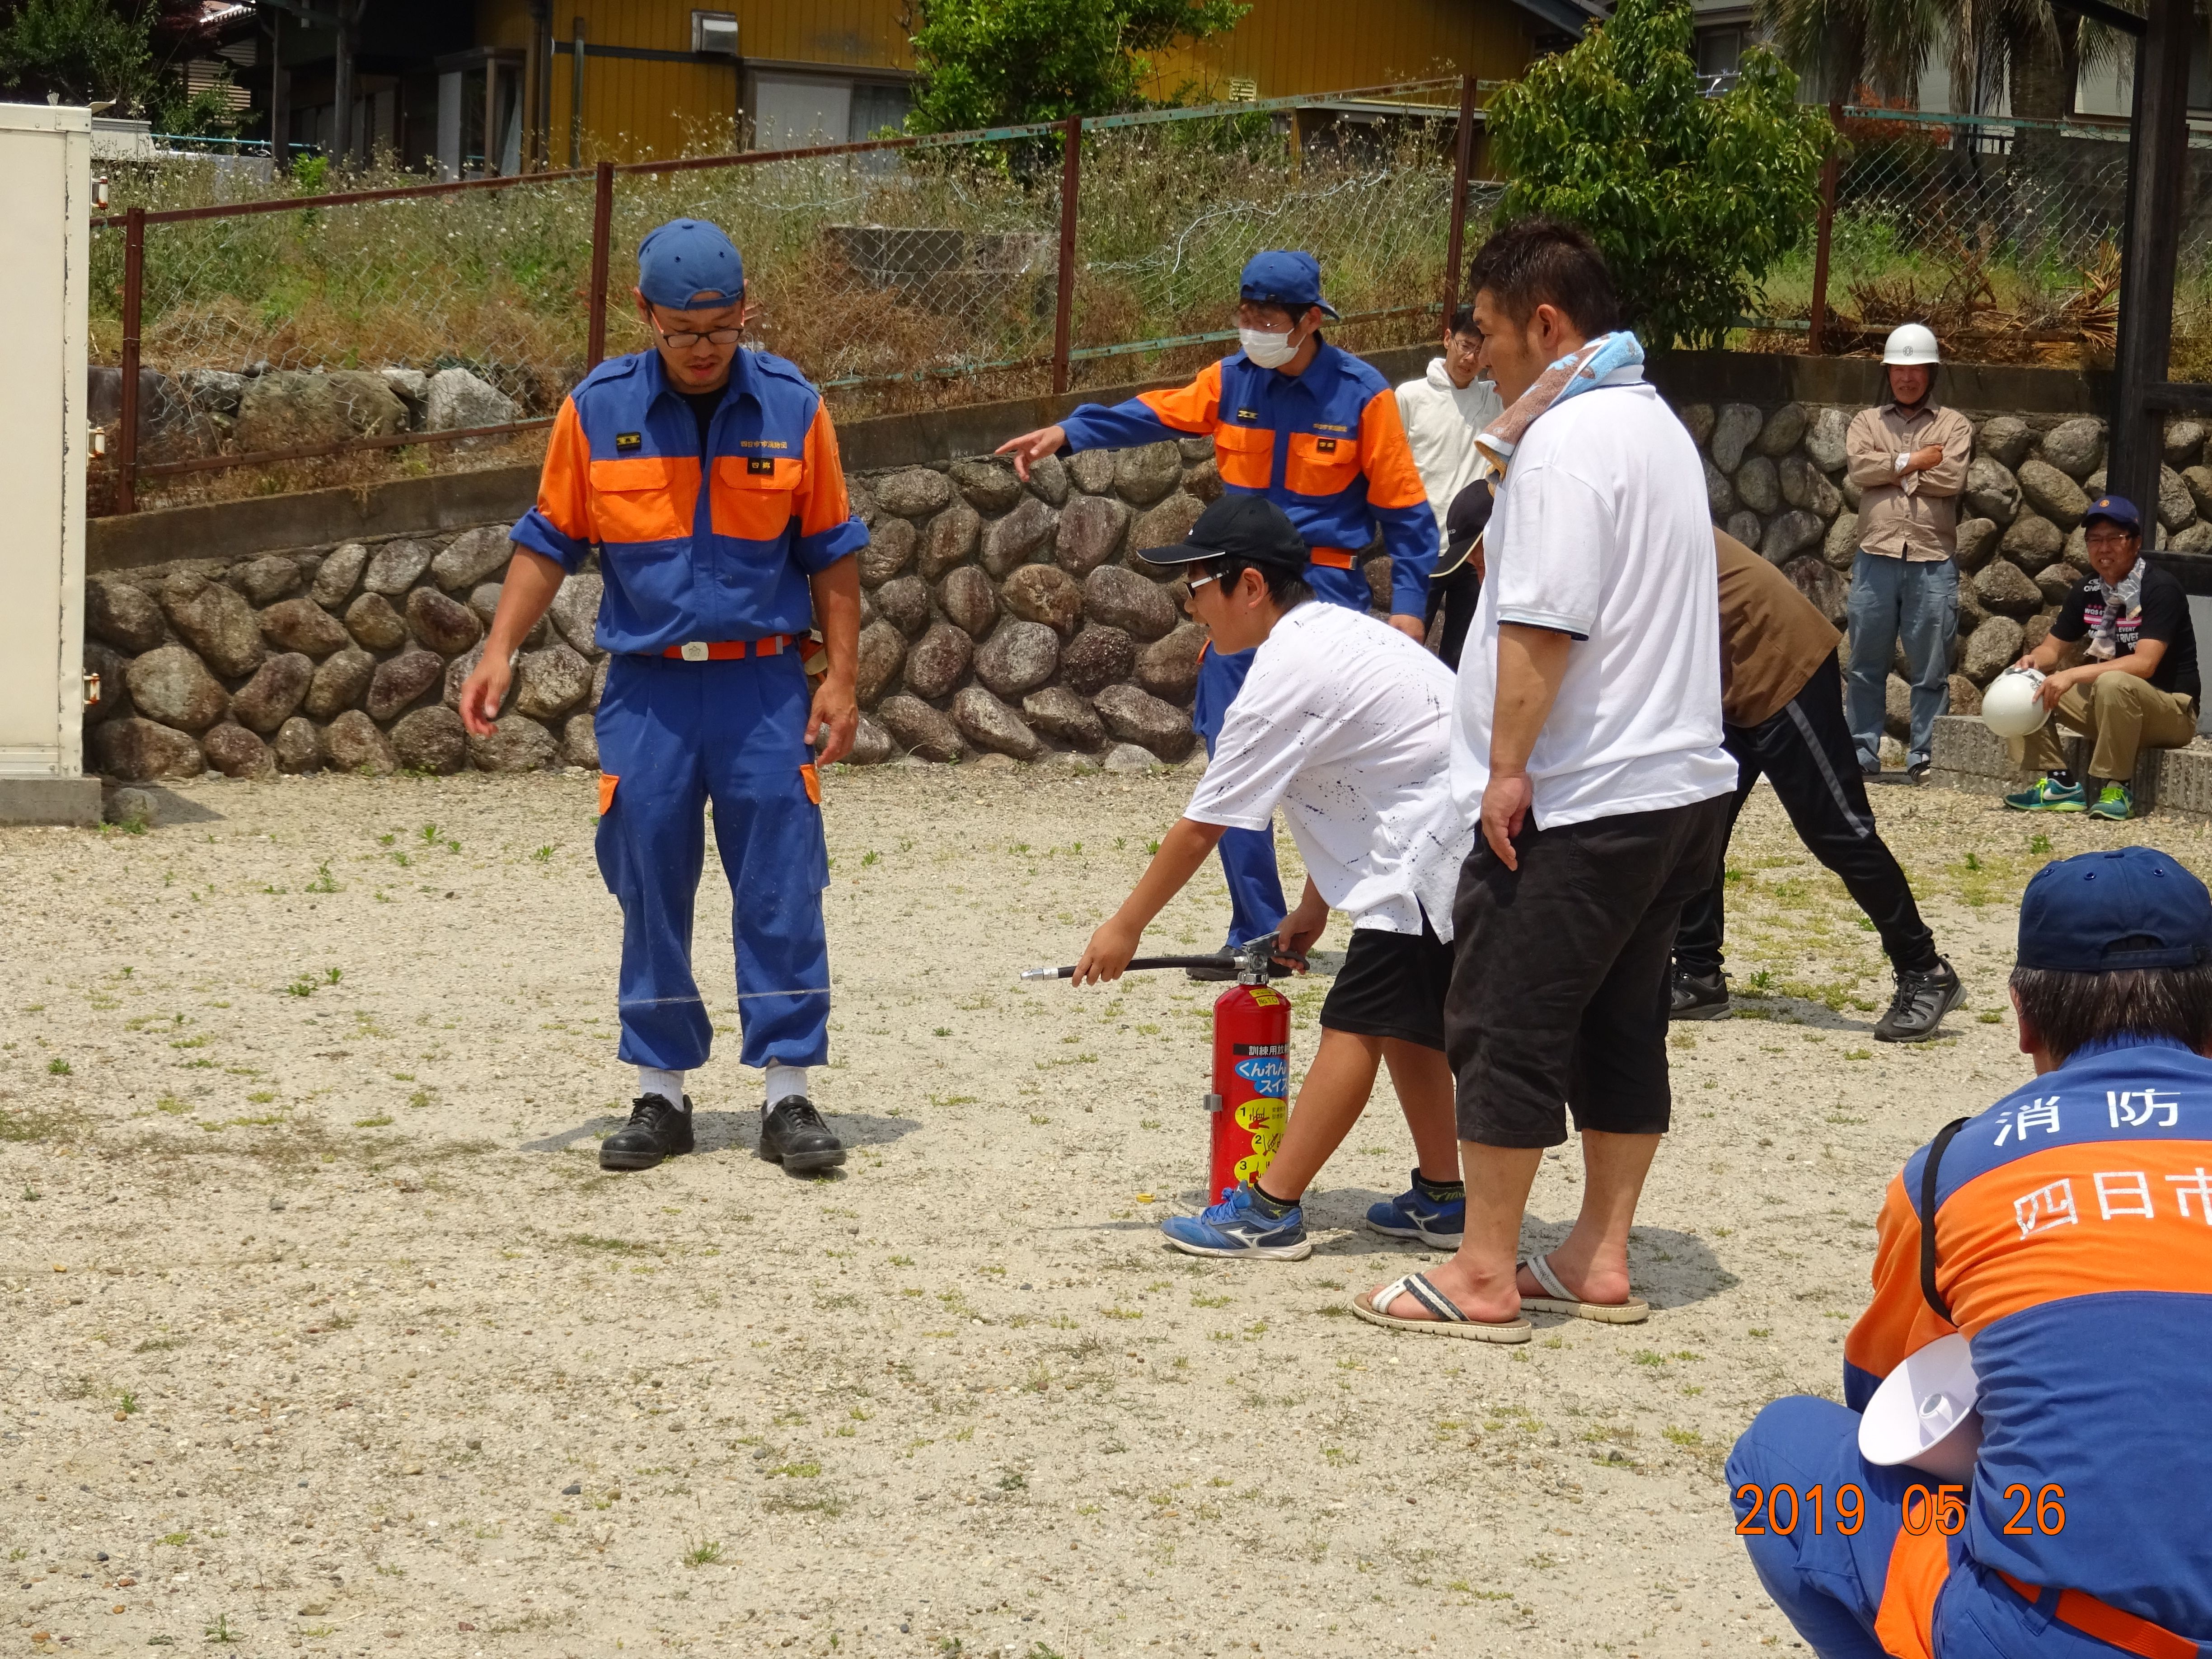 室山町防災訓練で水消火器を子供たちに指導する分団員